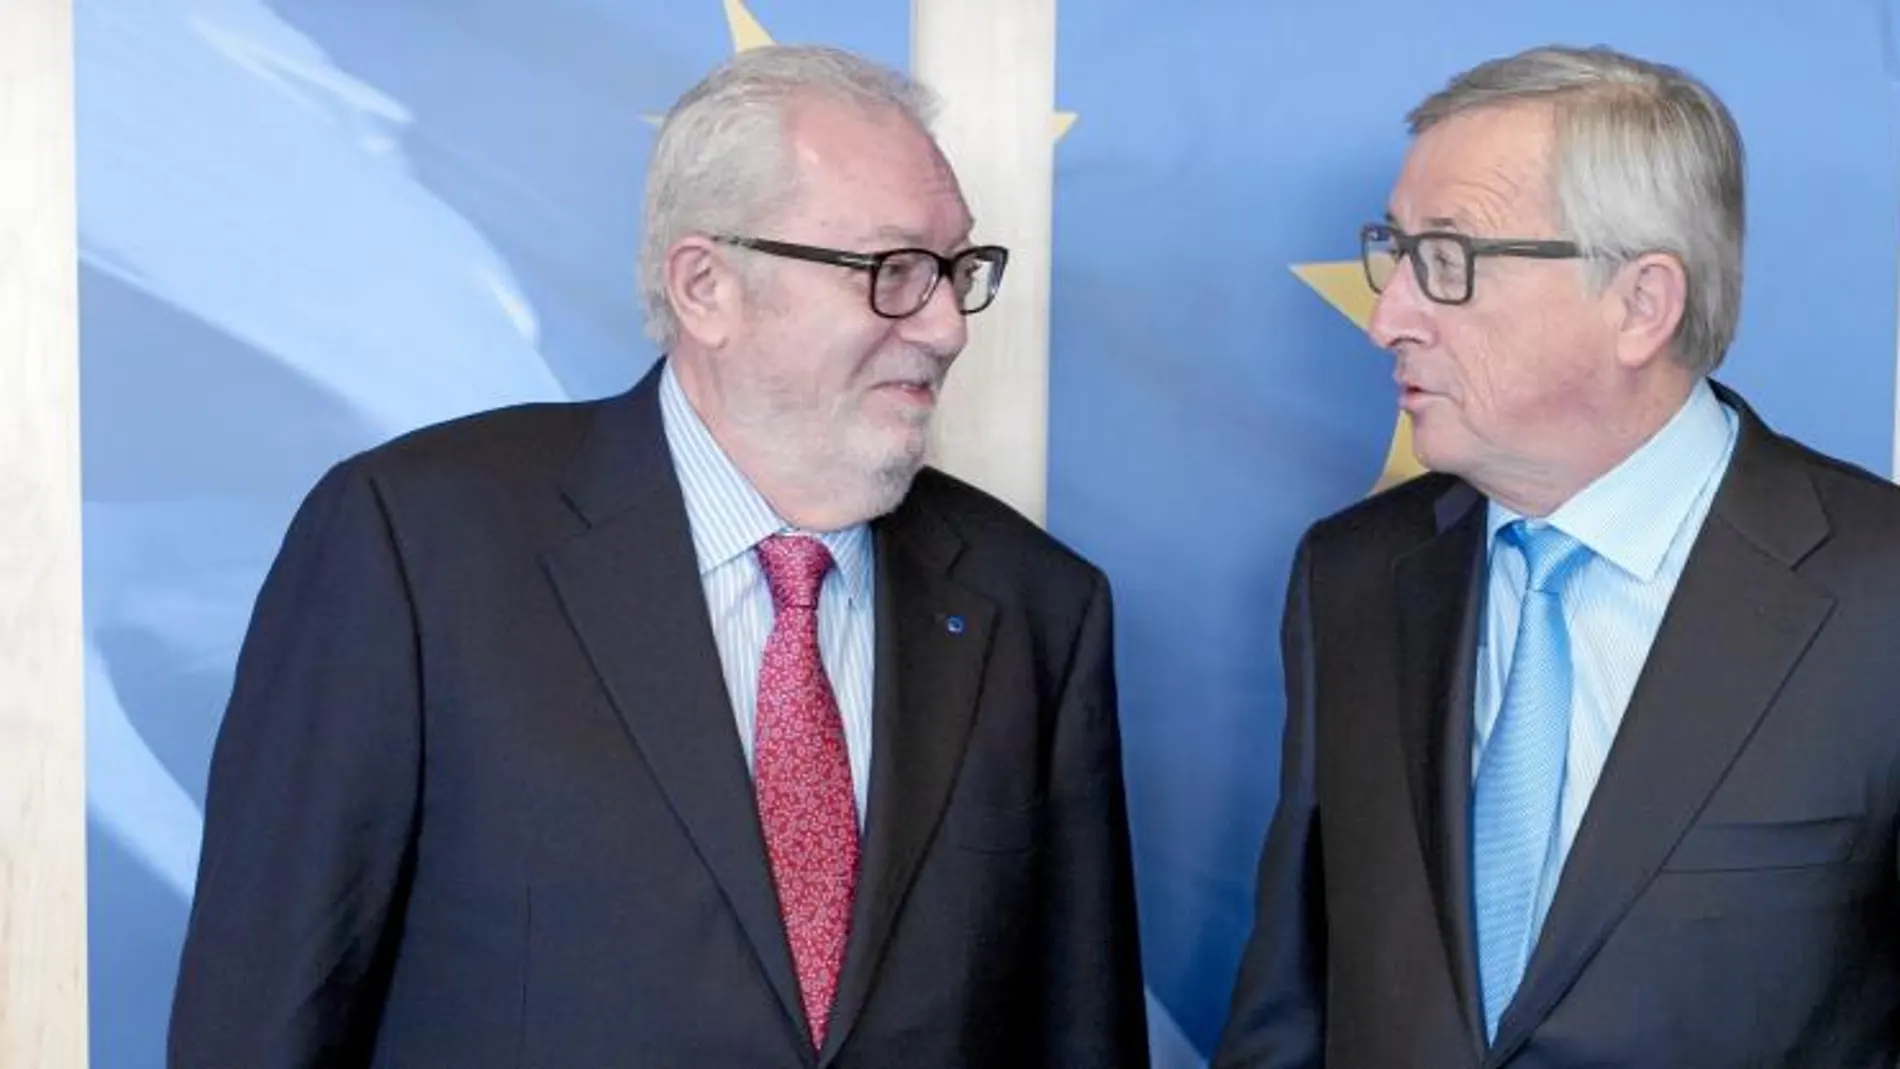 Juncker y Agramunt estuvieron departiendo en Bruselas de los temas de mayor actualidad que afectan a Europa y están relacionados con el Estado de Derecho, democracia y derechos humanos